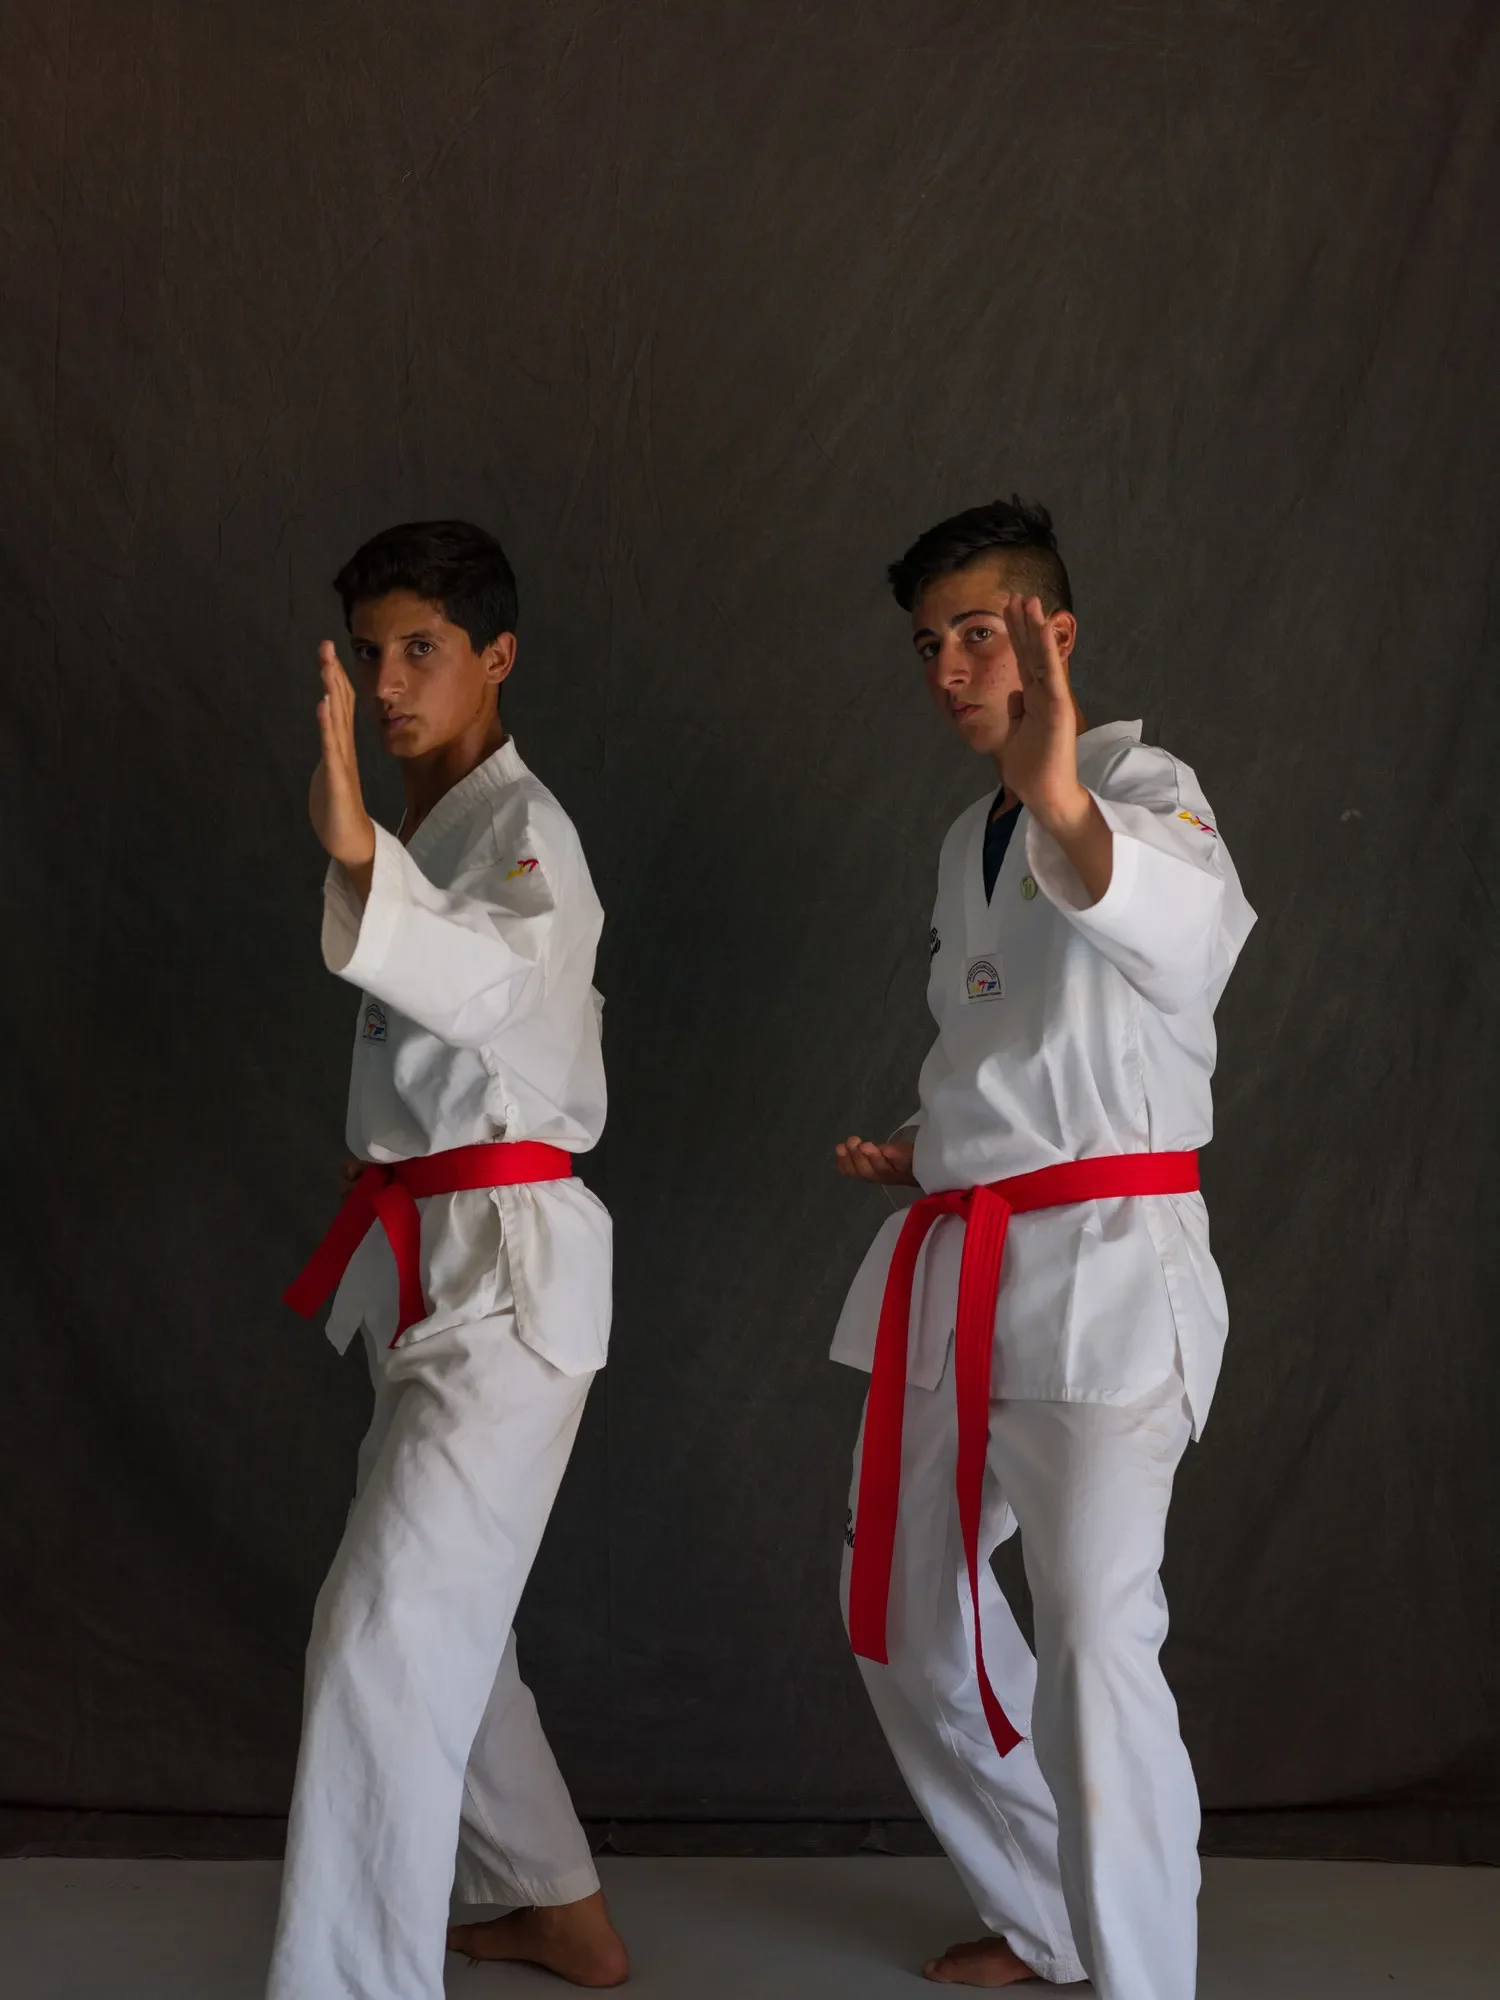 Influenciados por seu amor pelos filmes de taekwondo e Bruce Lee, Wael (à esquerda) e Abdulkareem criaram um filme de ação chamado